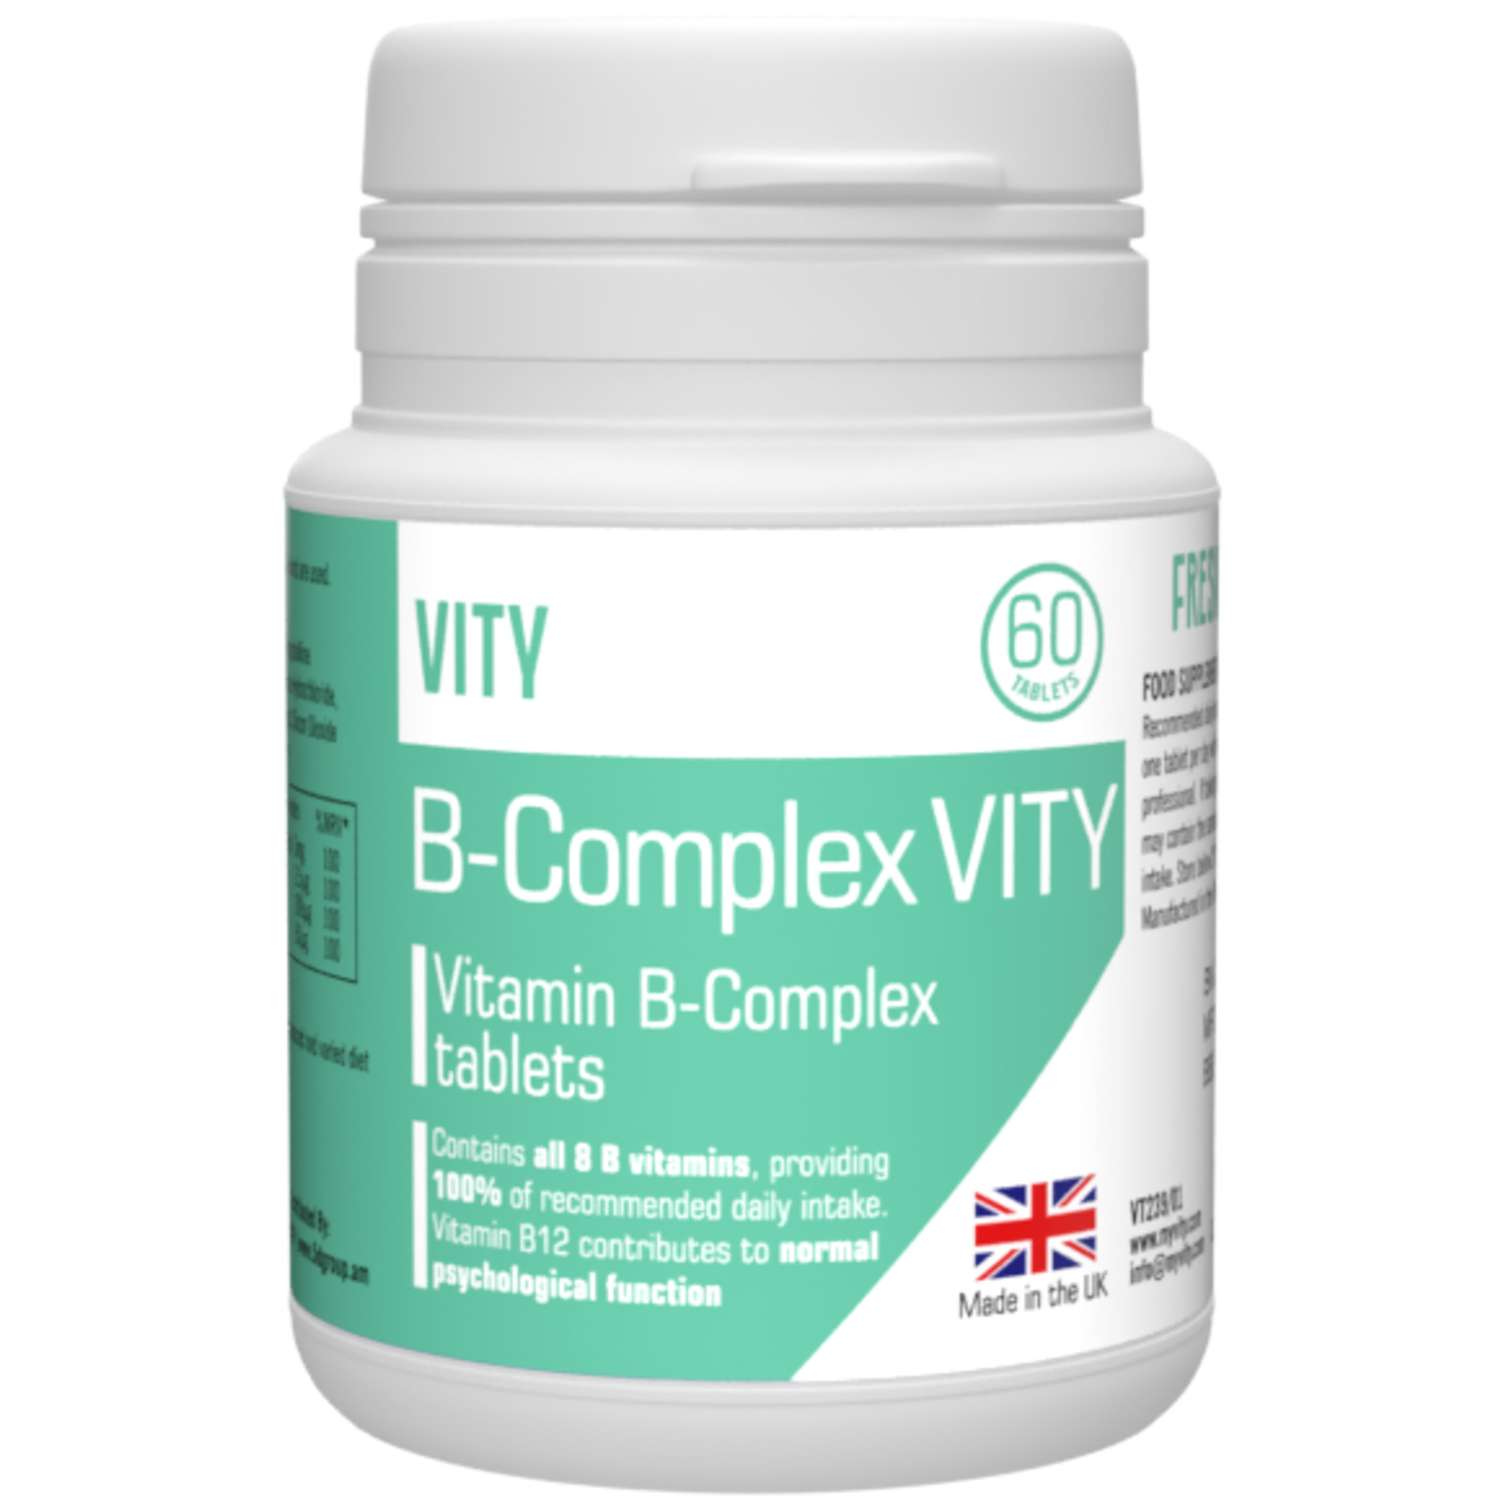 БАД VITY Комплекс Витаминов группы В 60 таблеток Великобритания - фото 1